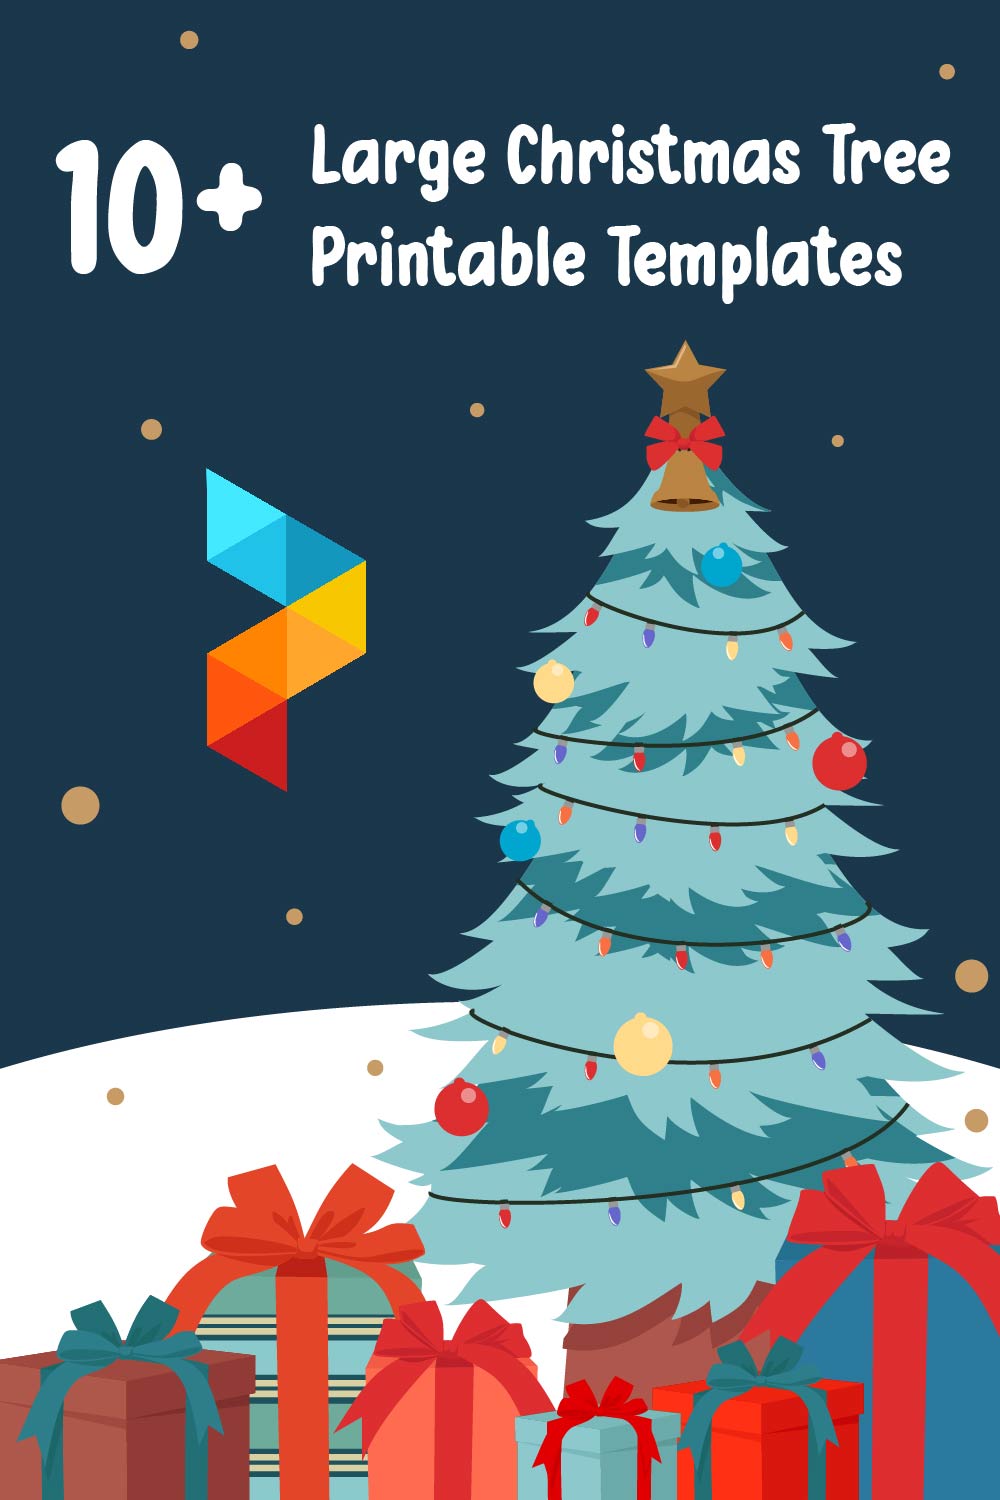 Large Christmas Tree Printable Templates